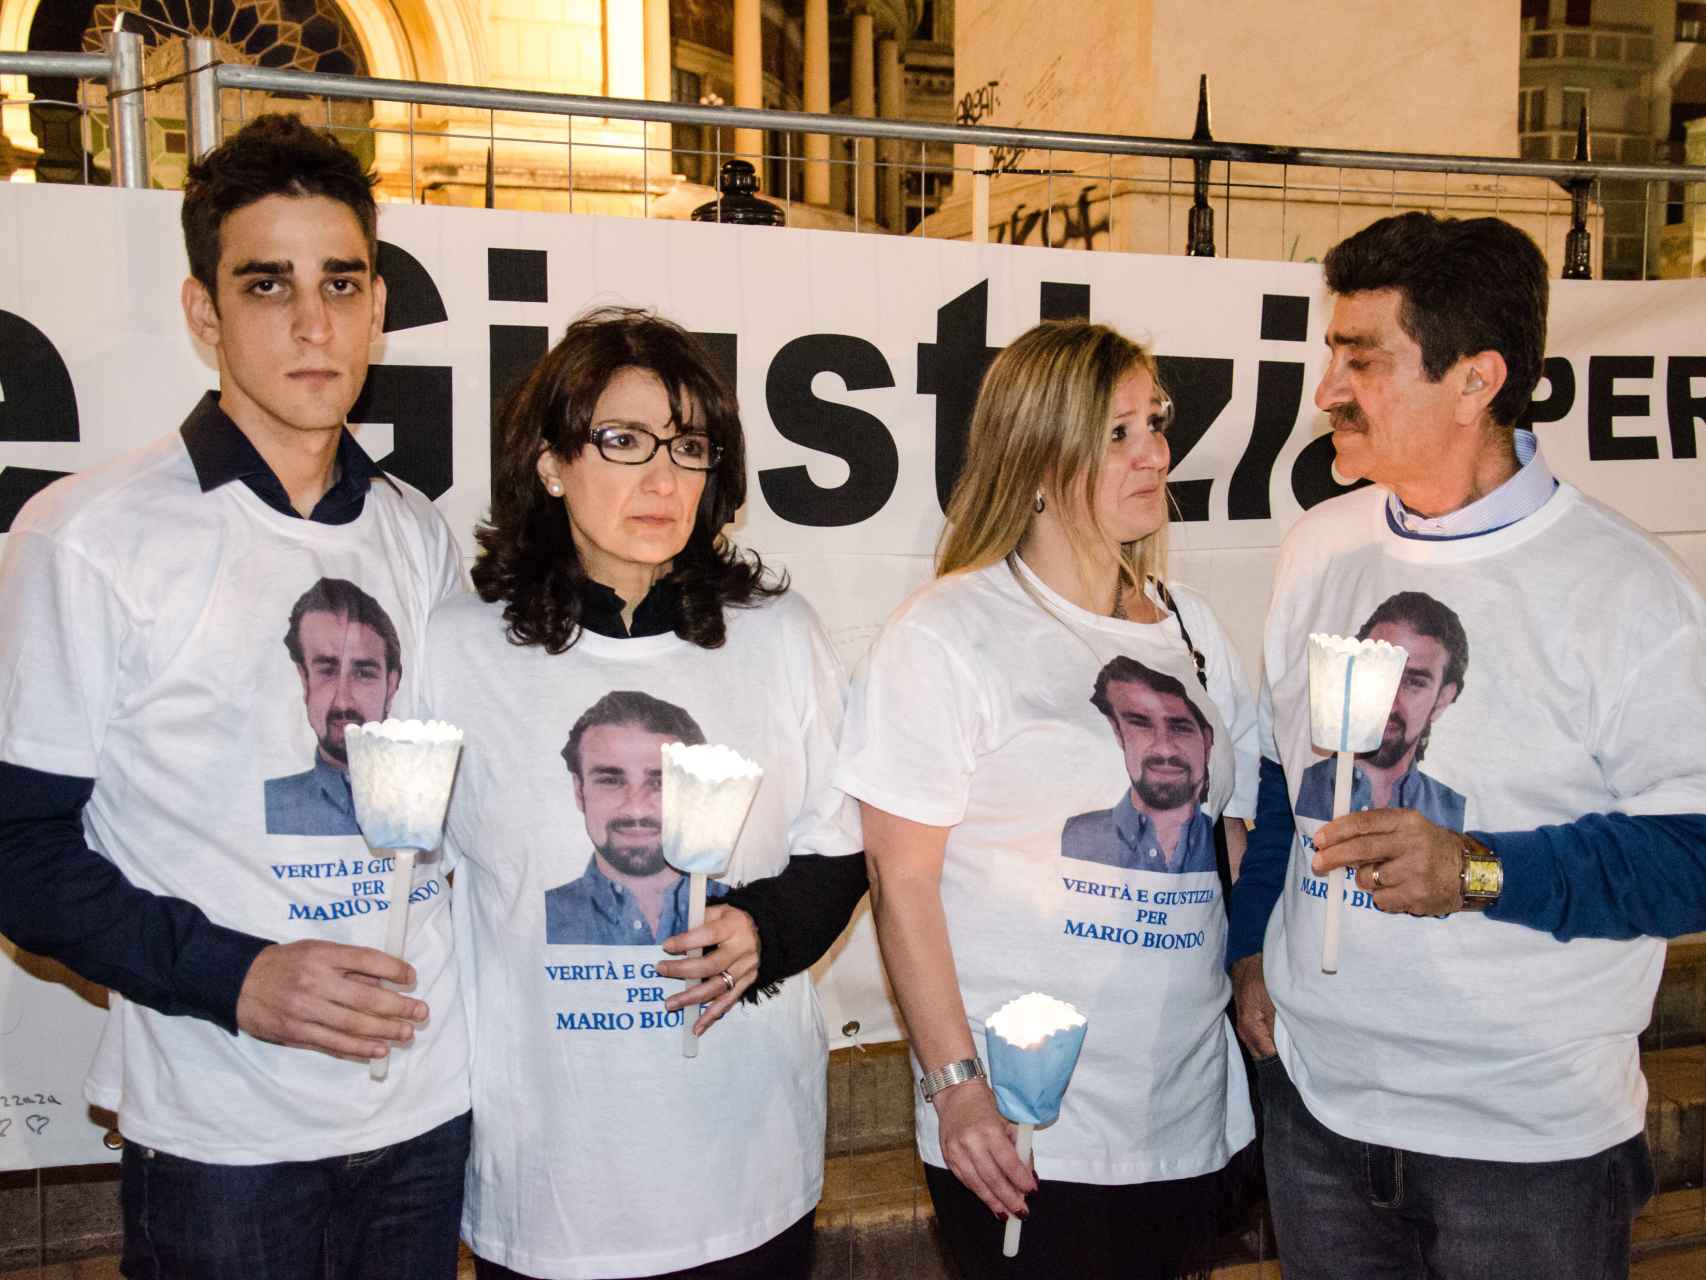 Los familiares de Mario Biondo pidiendo justicia